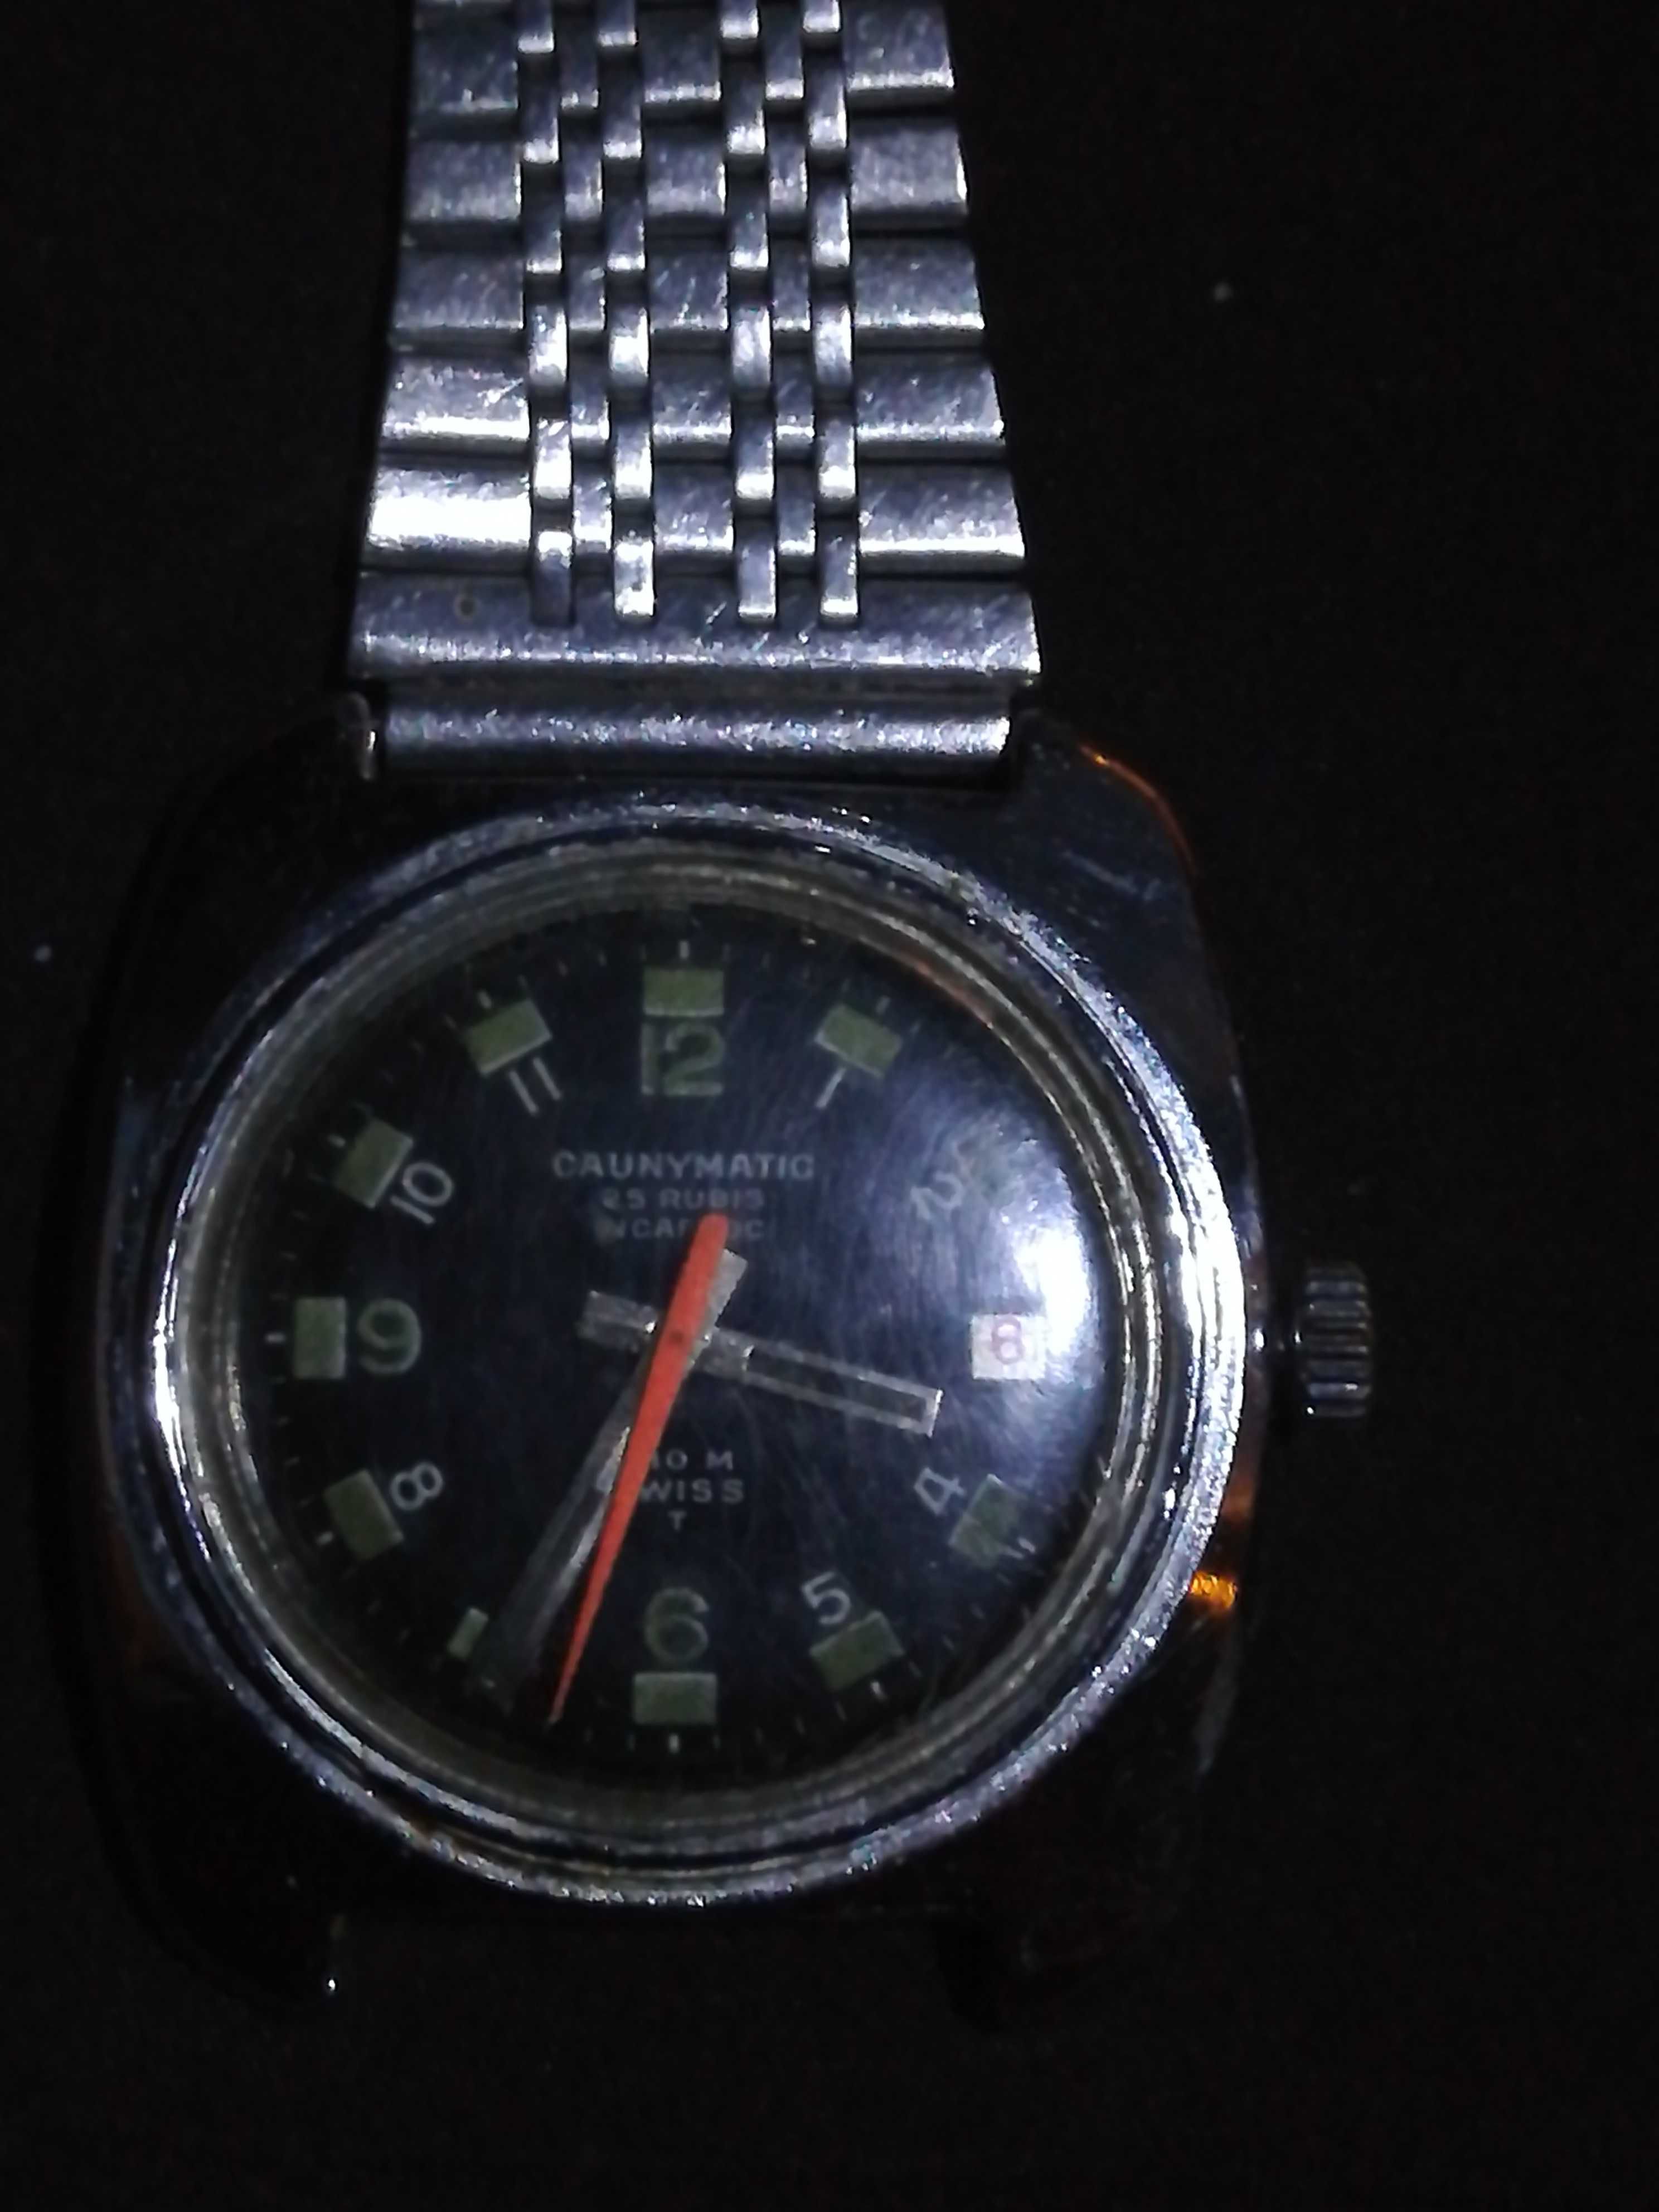 Relógio automático original caunymatic 25 rubis